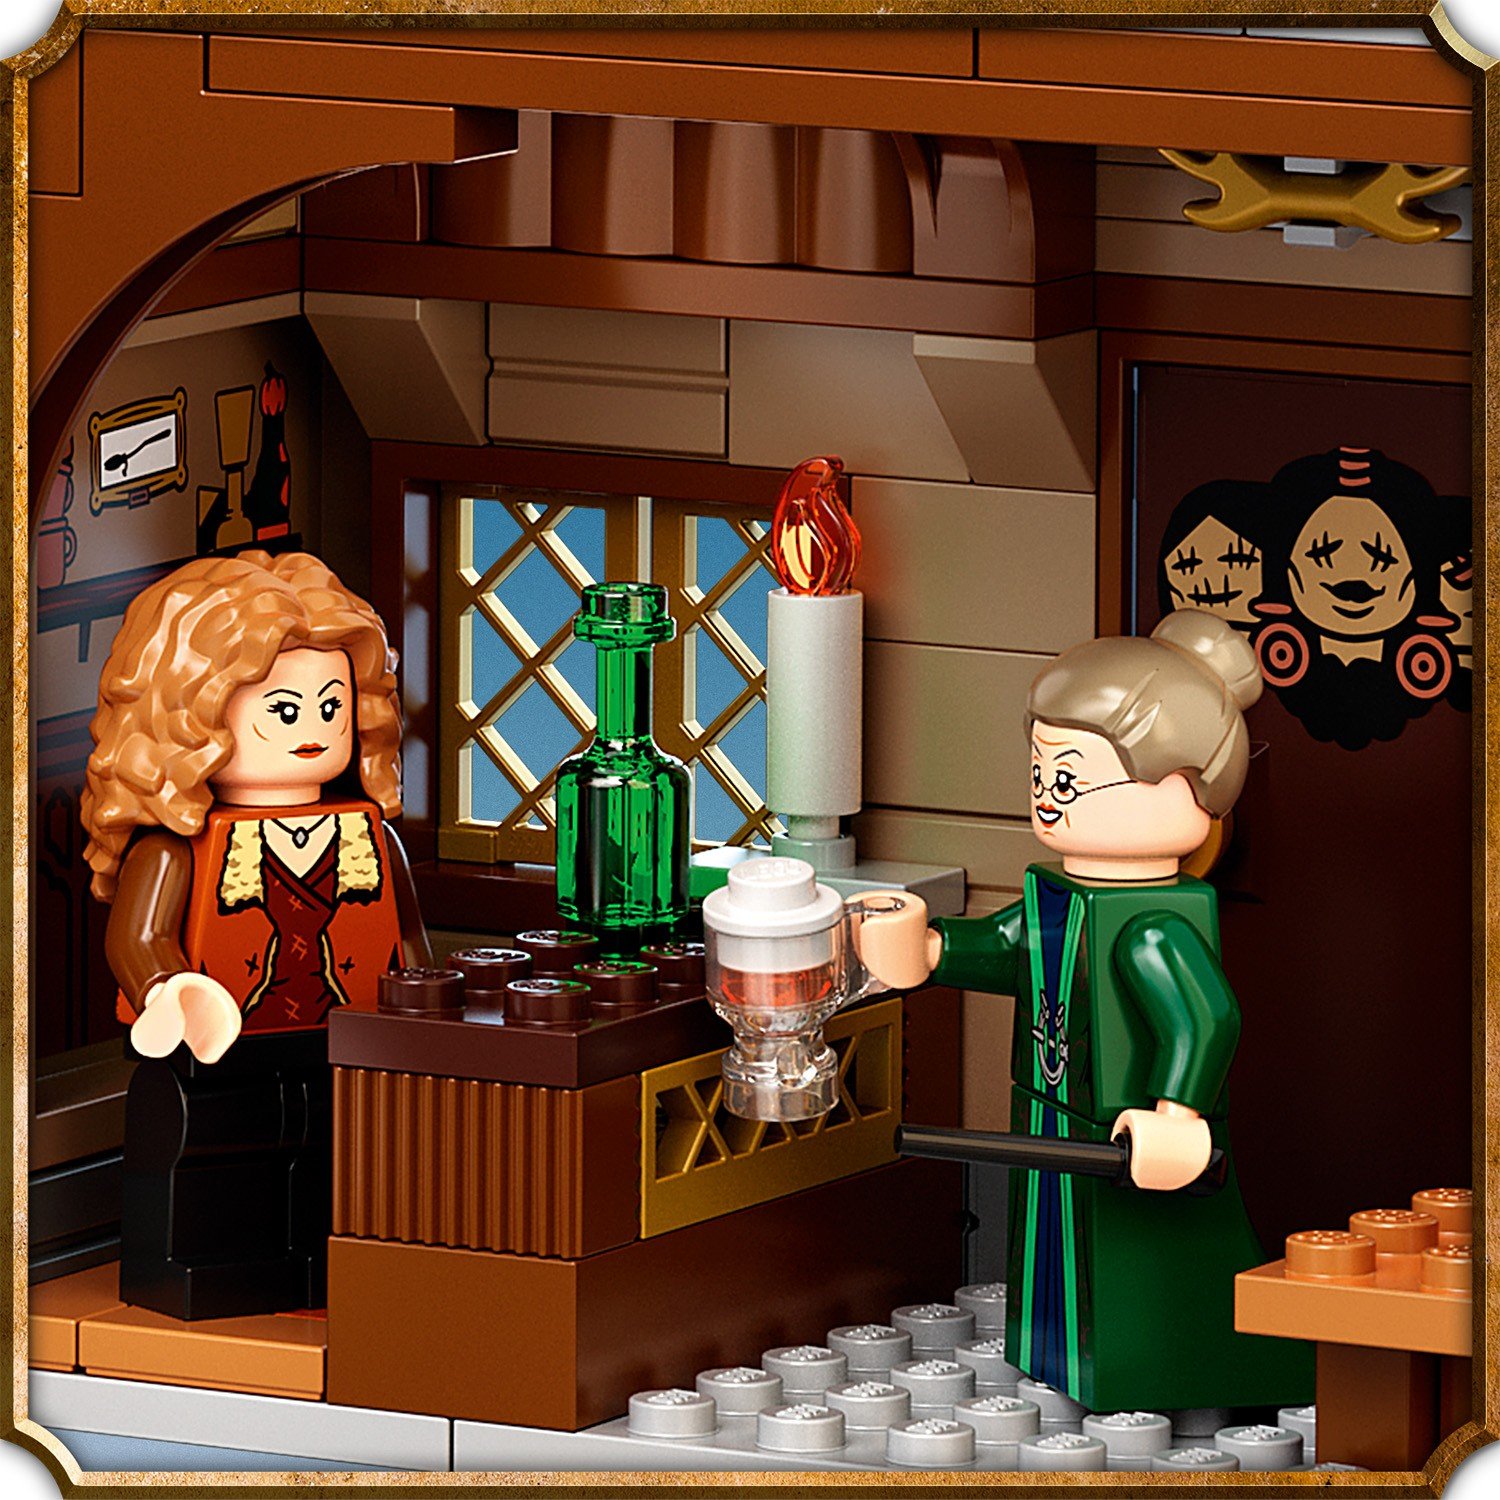 Lego Harry Potter 76388 Визит в деревню Хогсмид